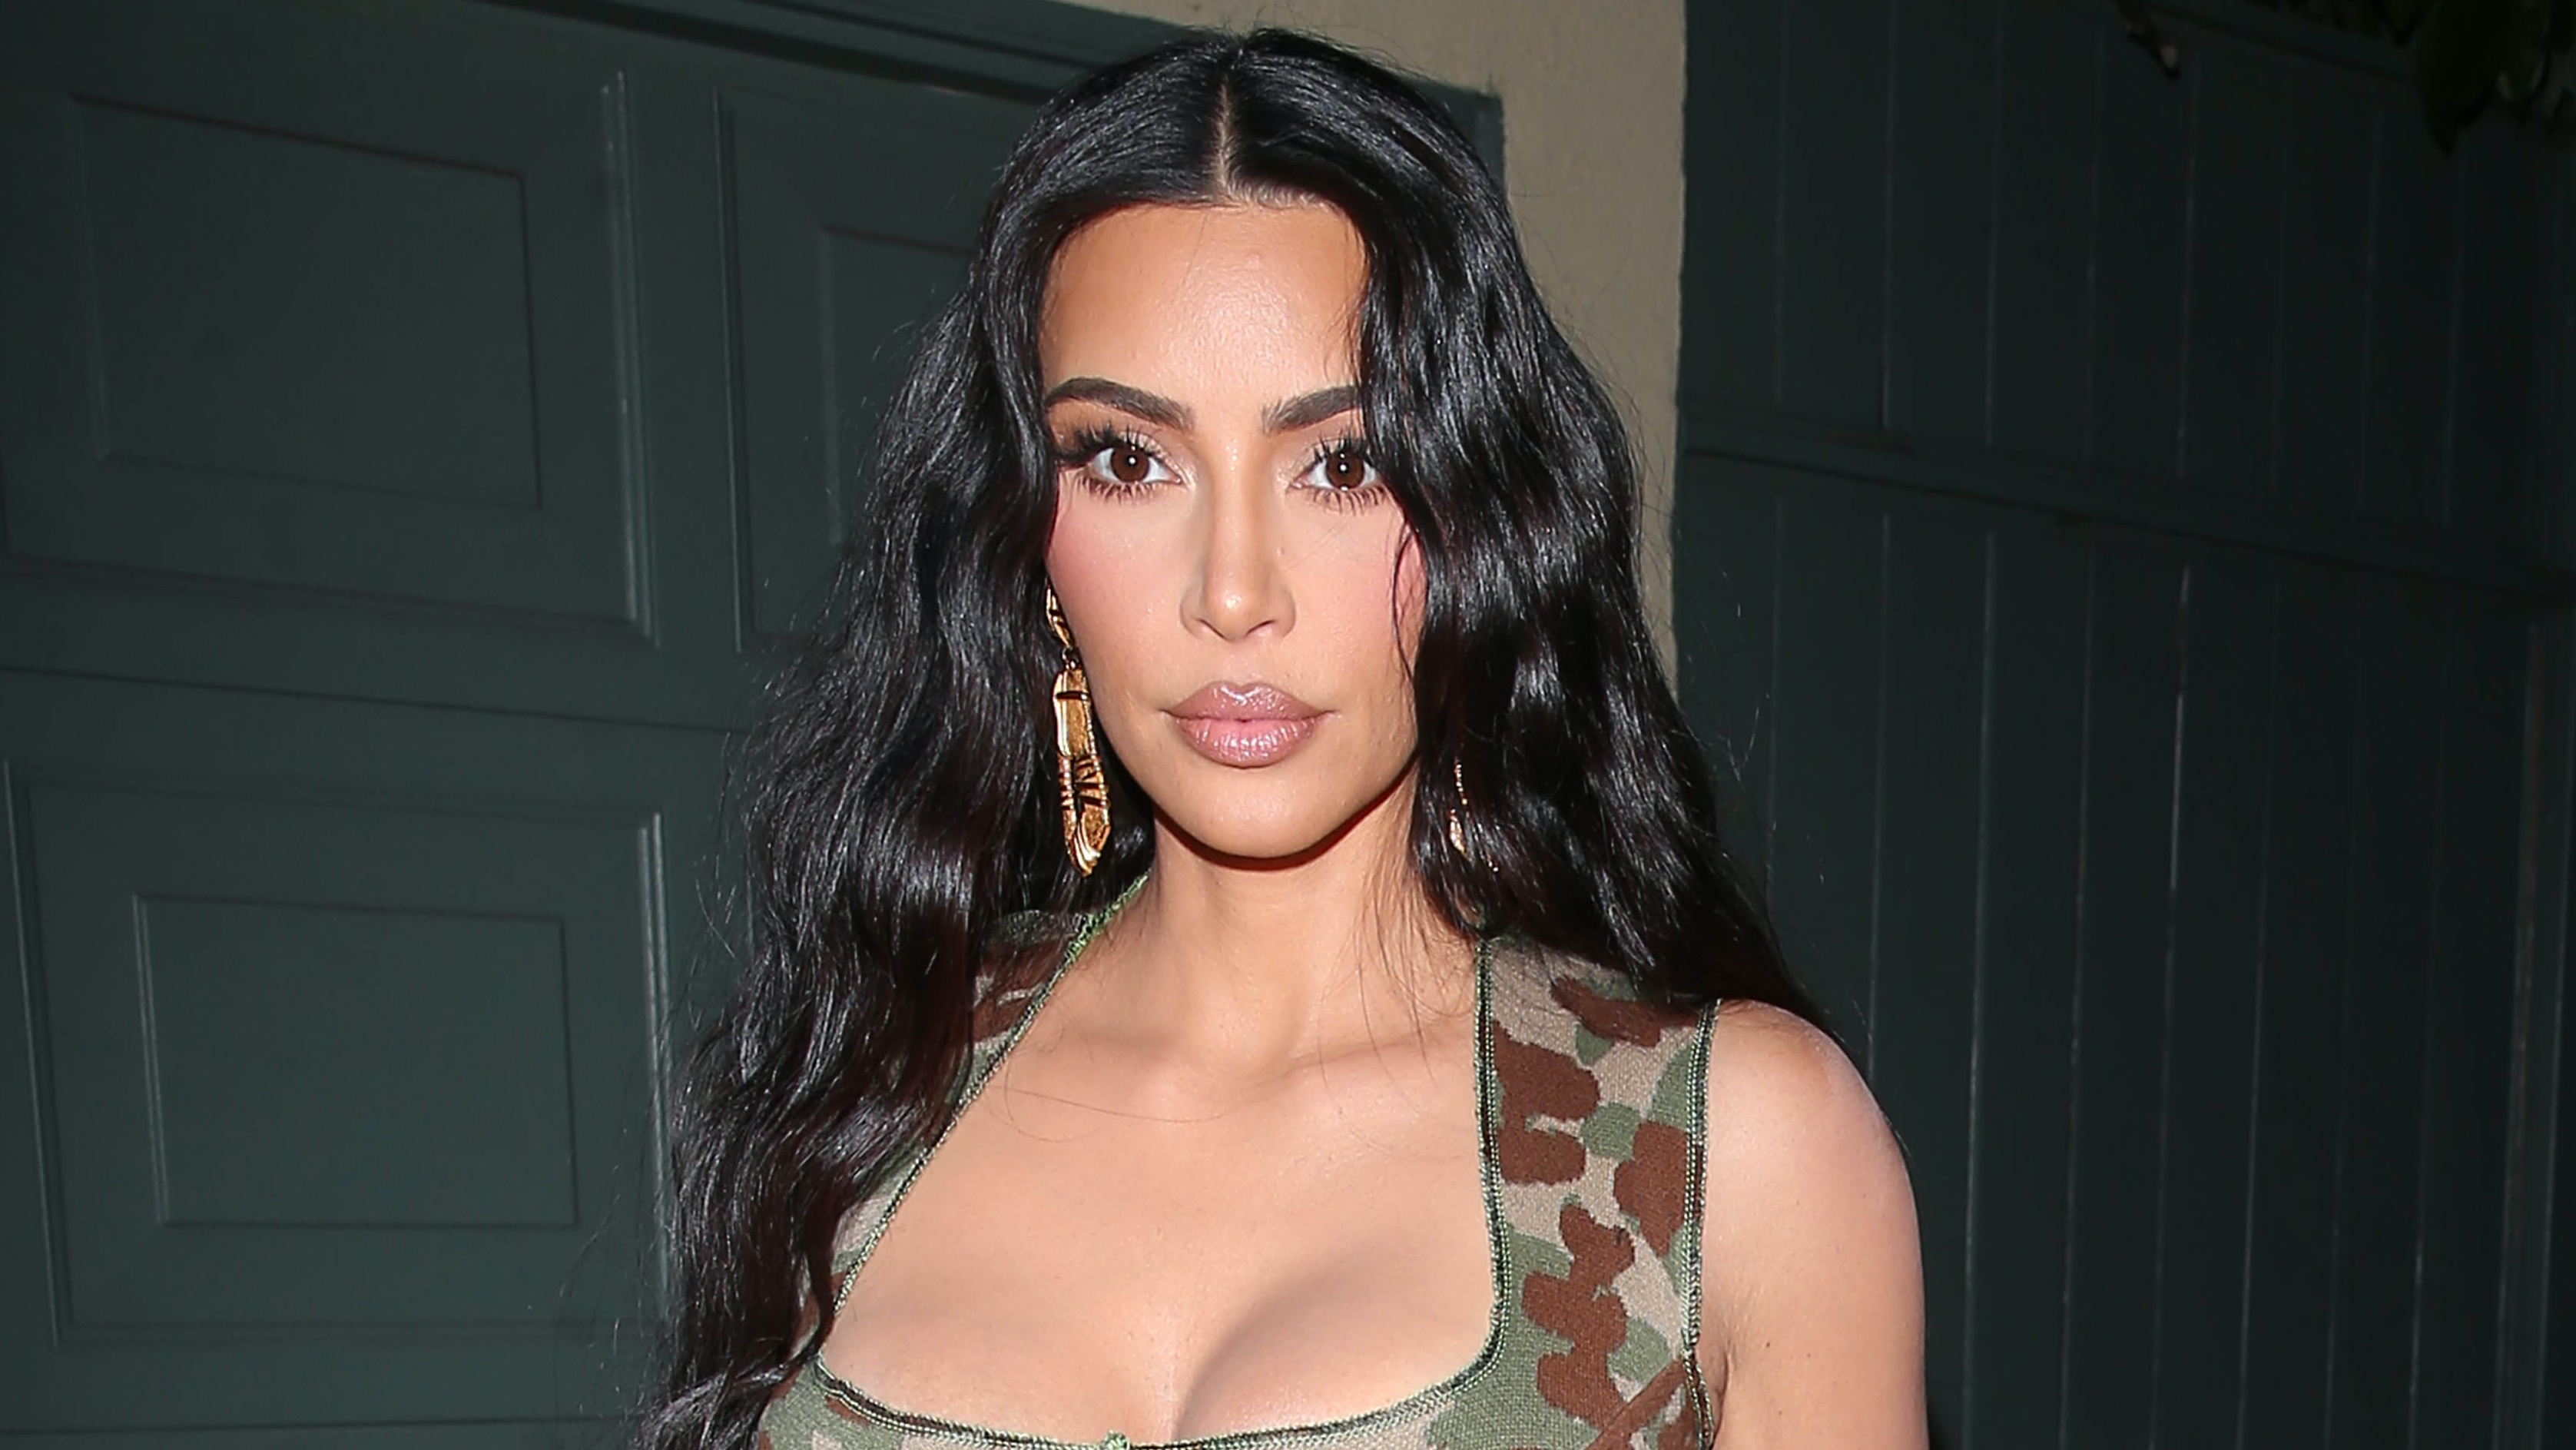 Kim Kardashian vajon bankot rabolni vagy fétis klubba megy ebben a fekete álarcban?